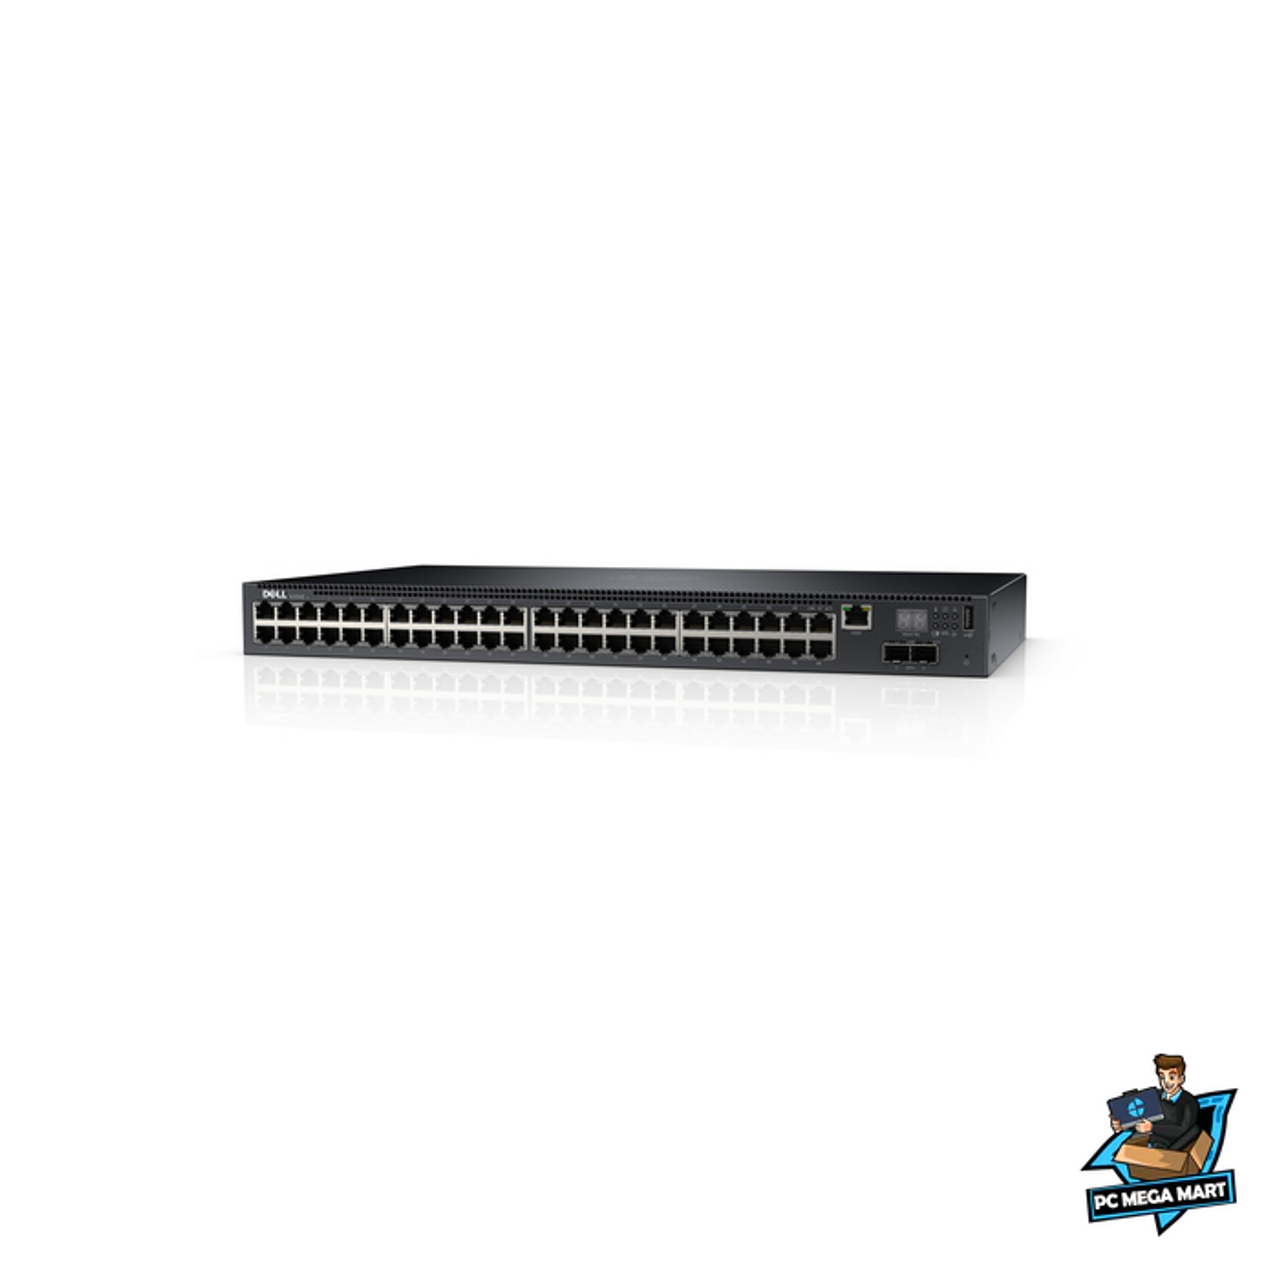 DELL PowerConnect N2048 Managed L3 Gigabit Ethernet (10 100 1000) Black 1U 3